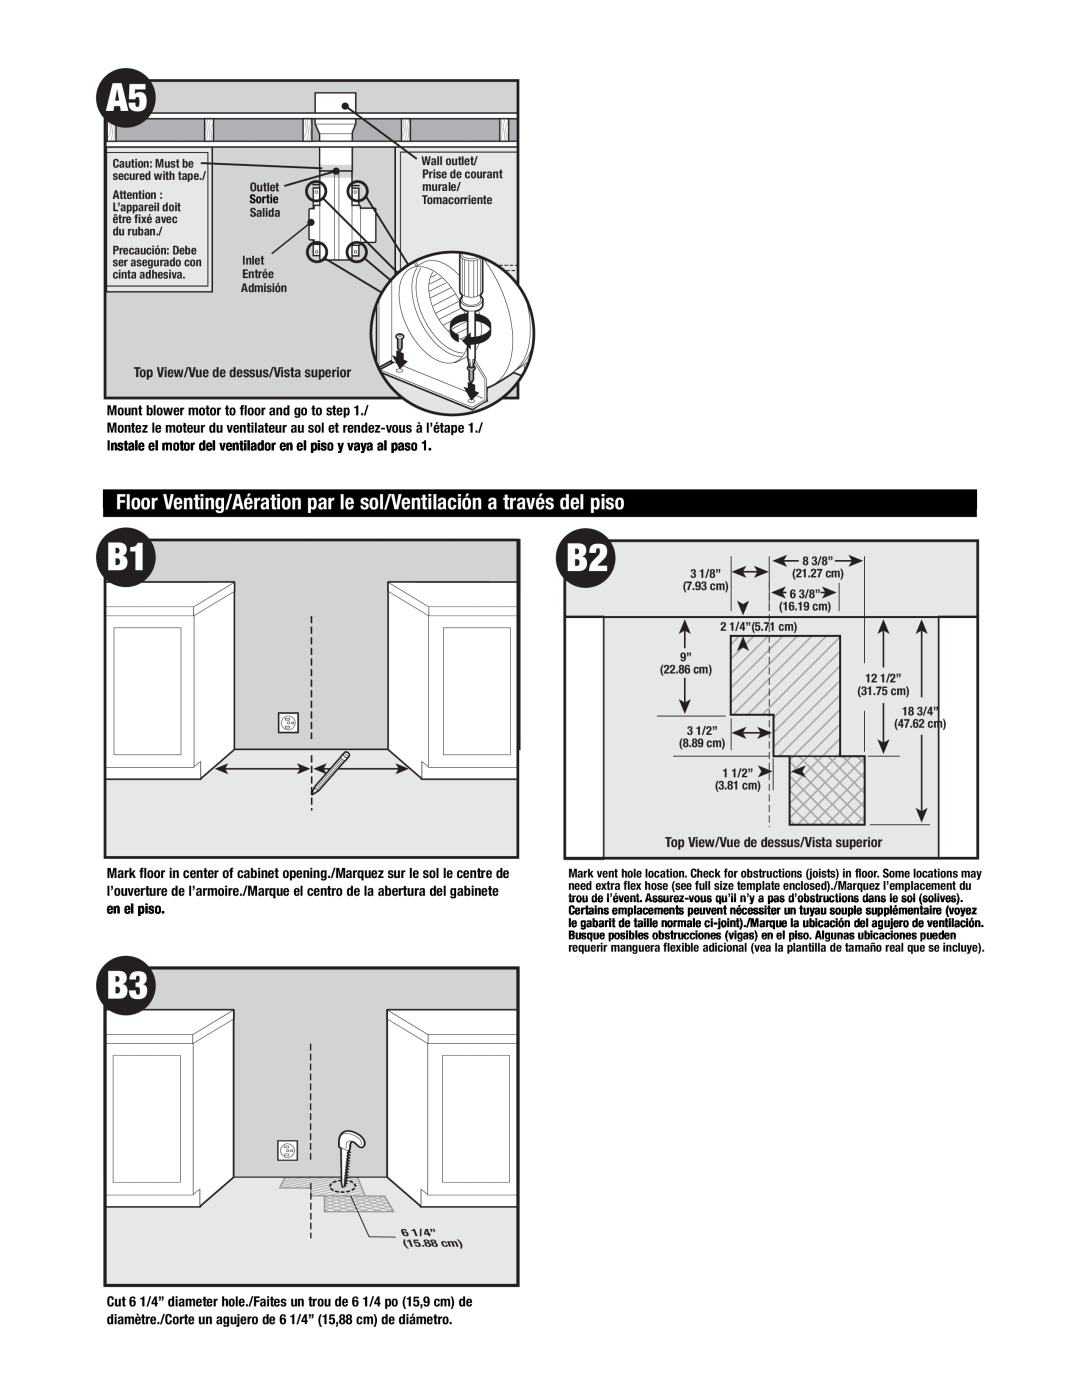 Jenn-Air Oven manual Floor Venting/Aération par le sol/Ventilación a través del piso, Top View/Vue de dessus/Vista superior 